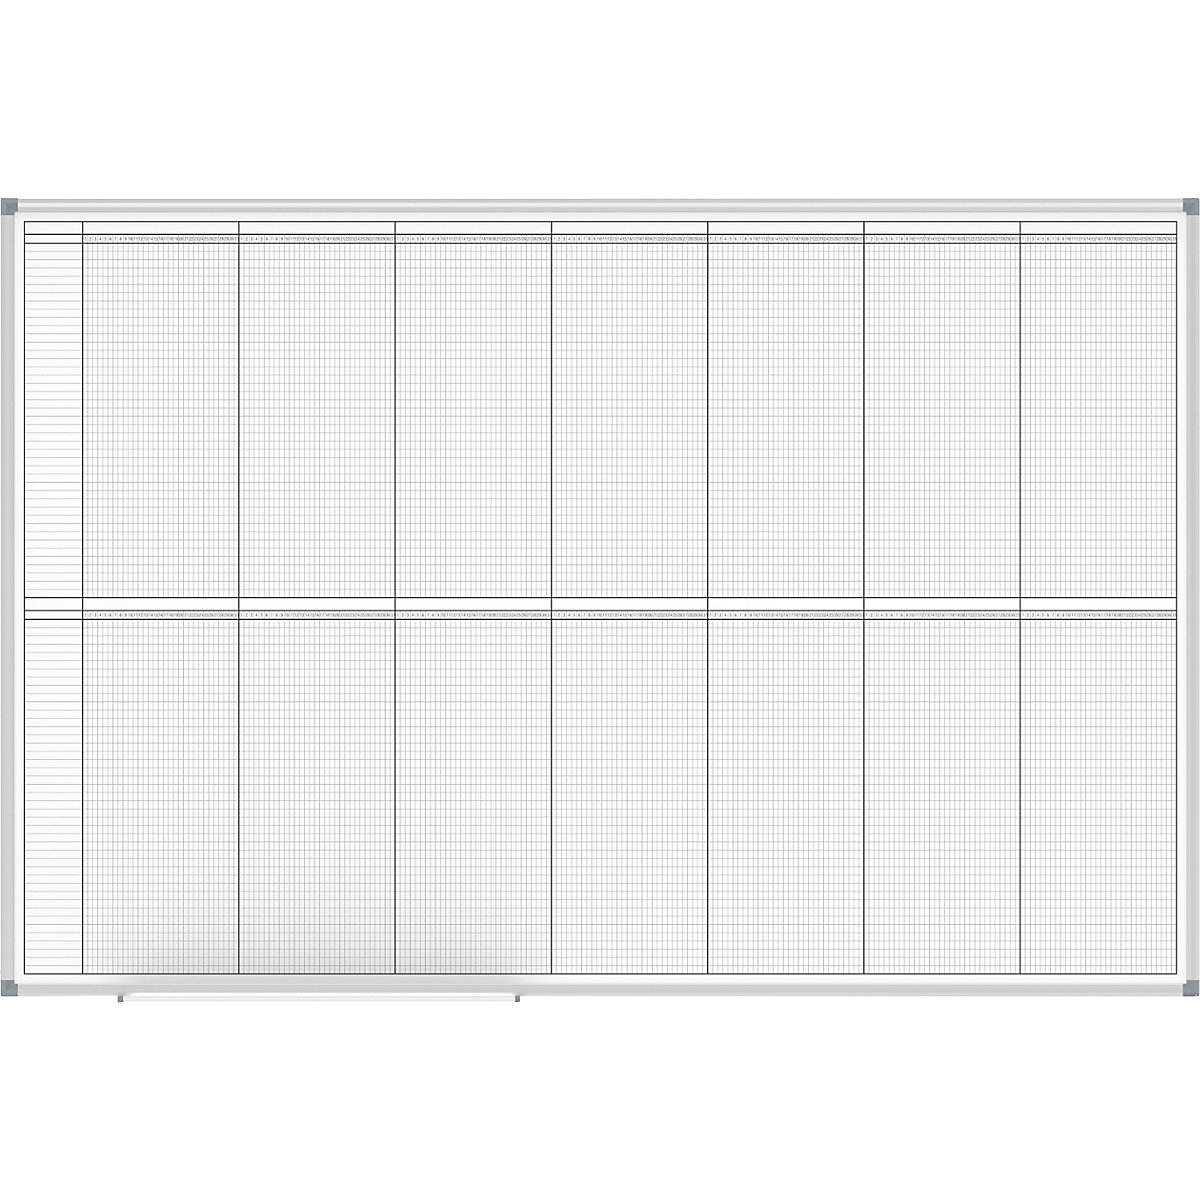 Plánovacia tabuľa – MAUL, ročný plánovač, náhľad 2 x 6 mesiacov, šírka 1500 mm-3